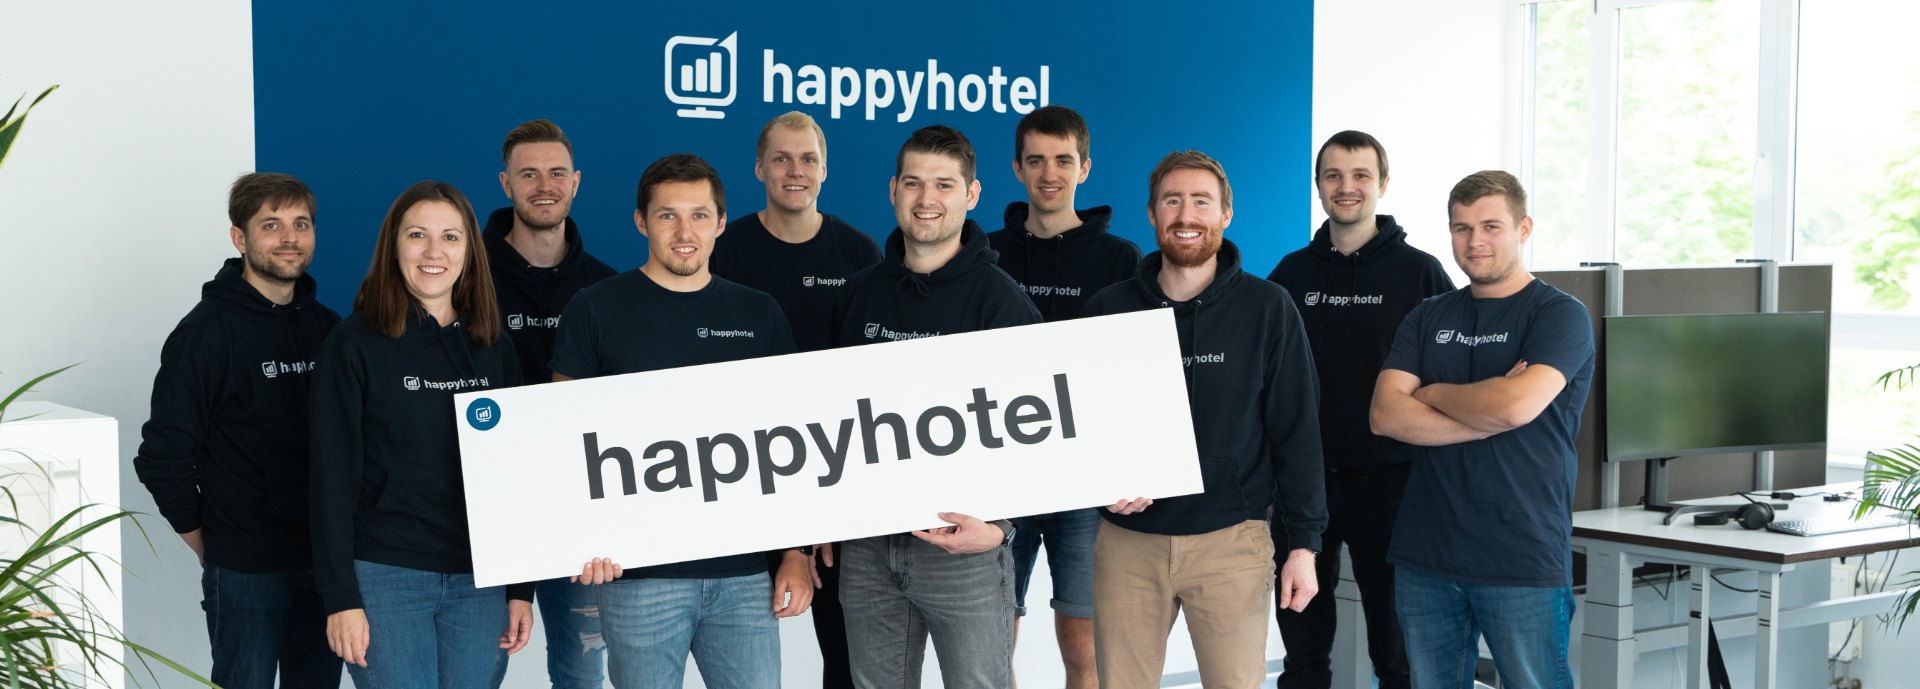 happyhotel team sommerfest über uns